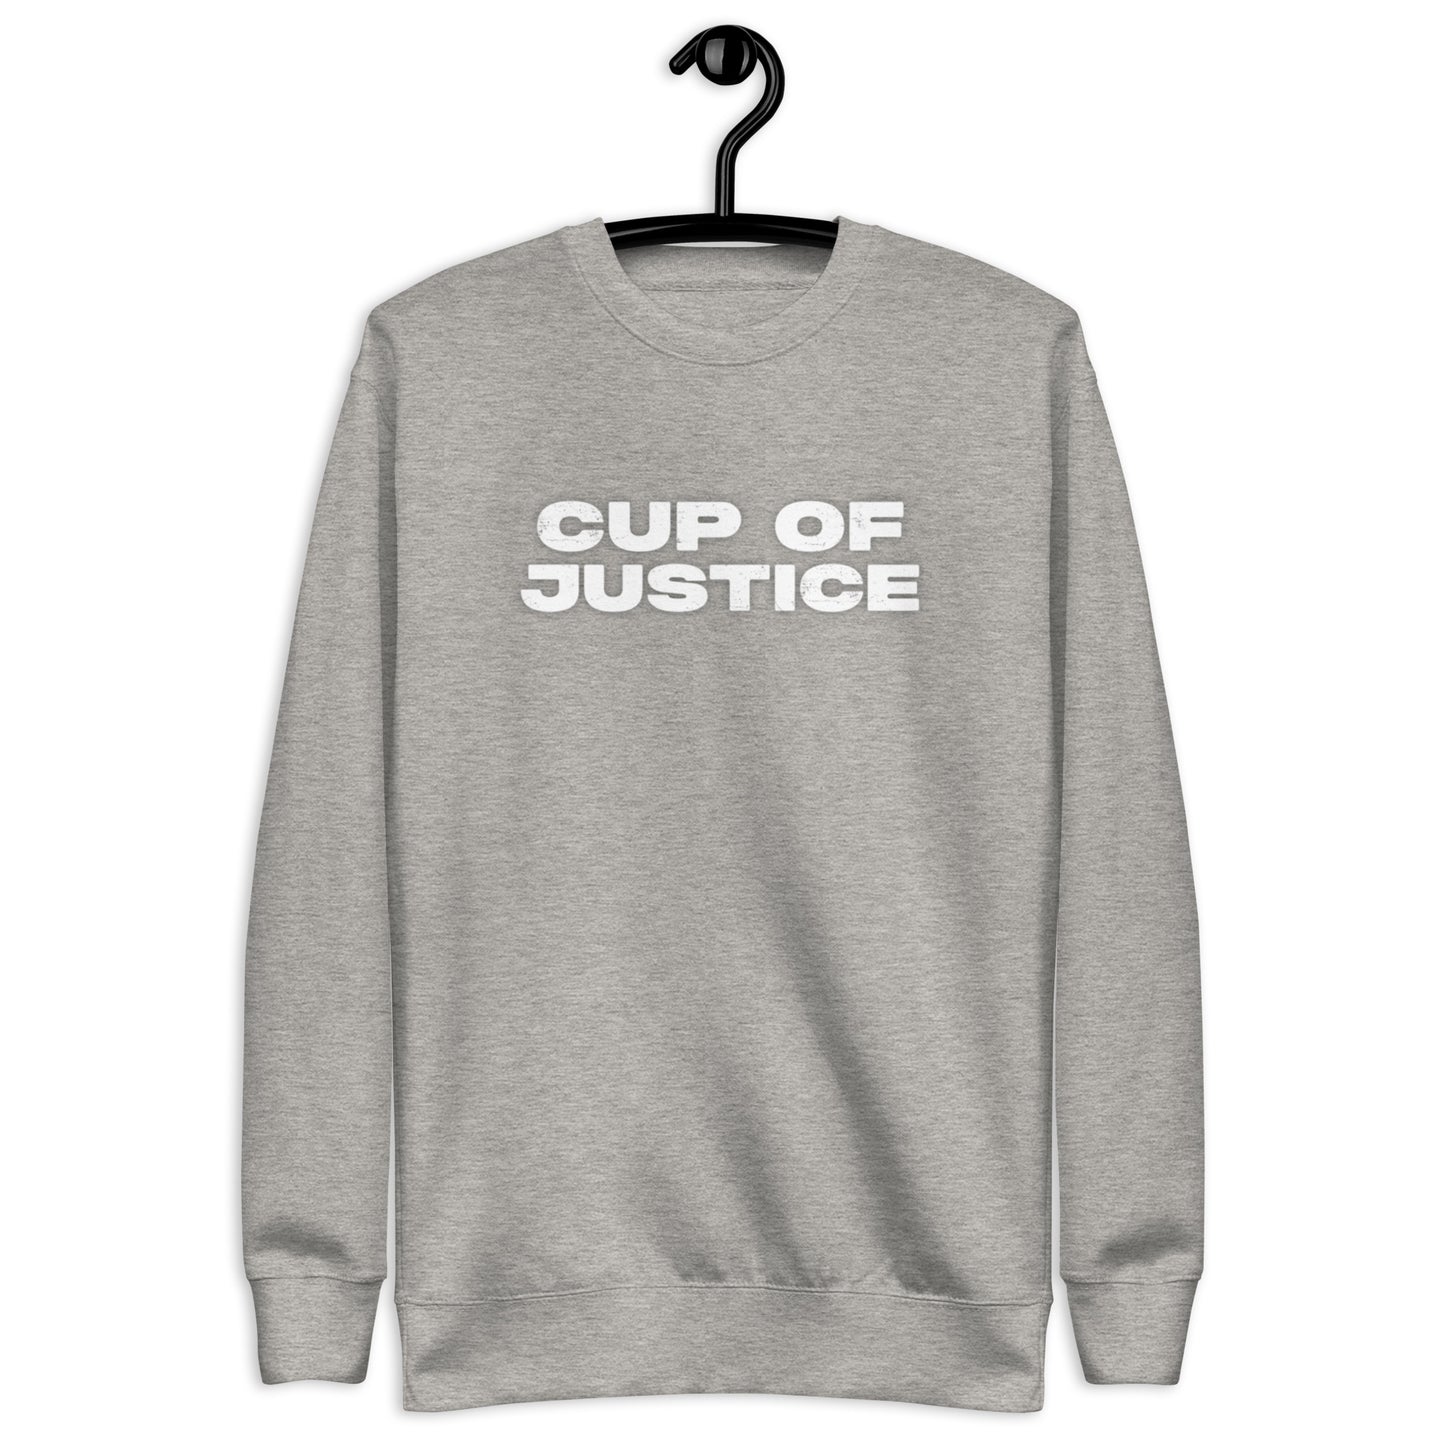 Cup of Justice Sweatshirt